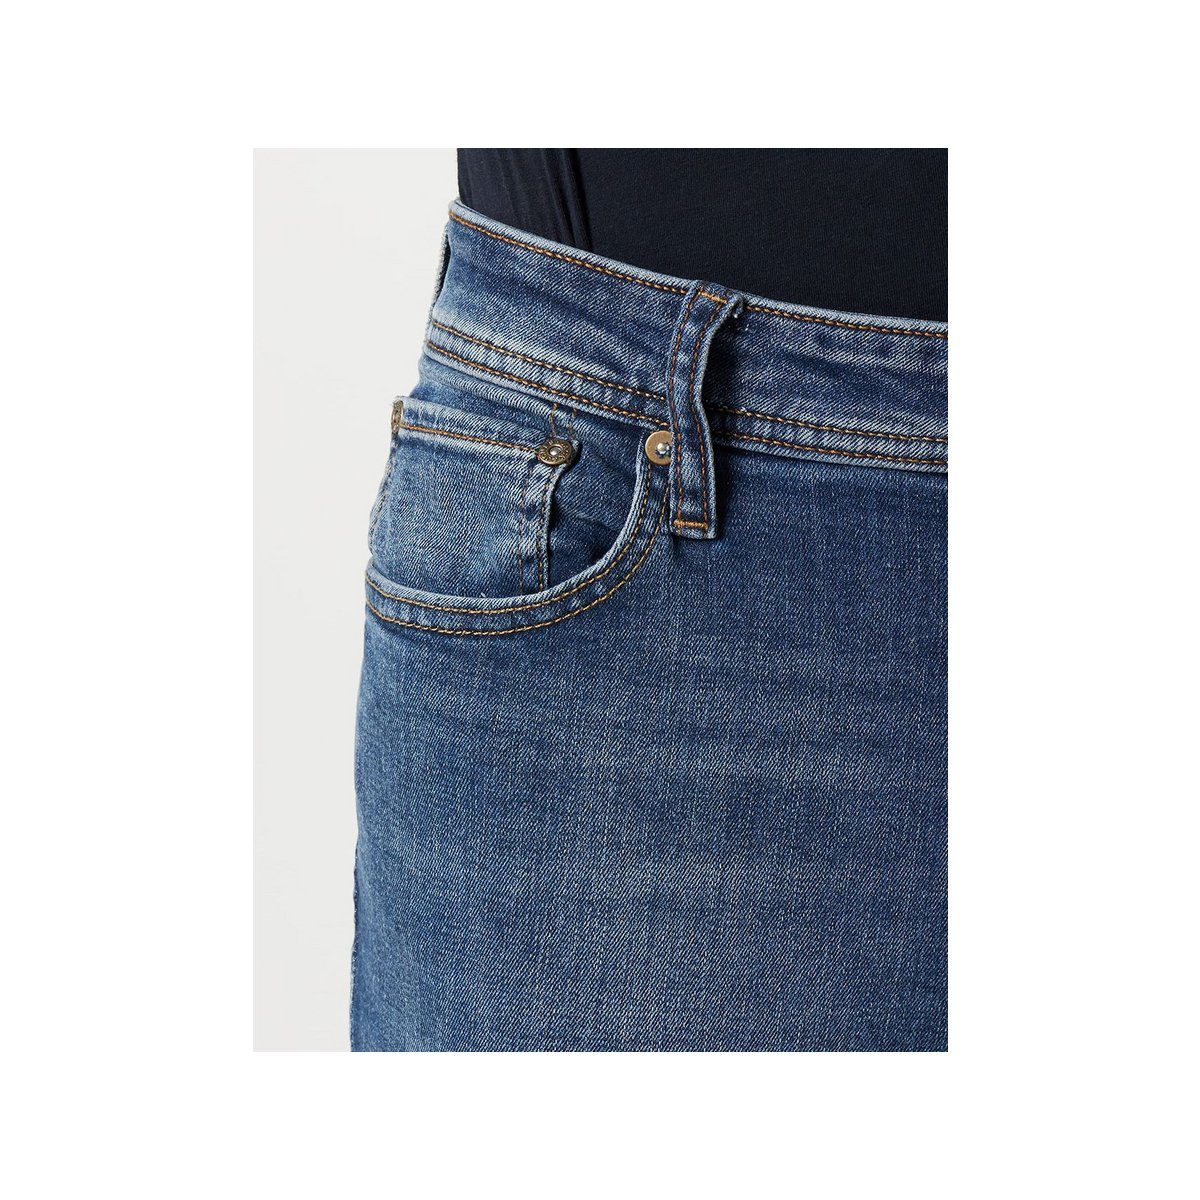 Jack Jones (1-tlg) 5-Pocket-Jeans blau &